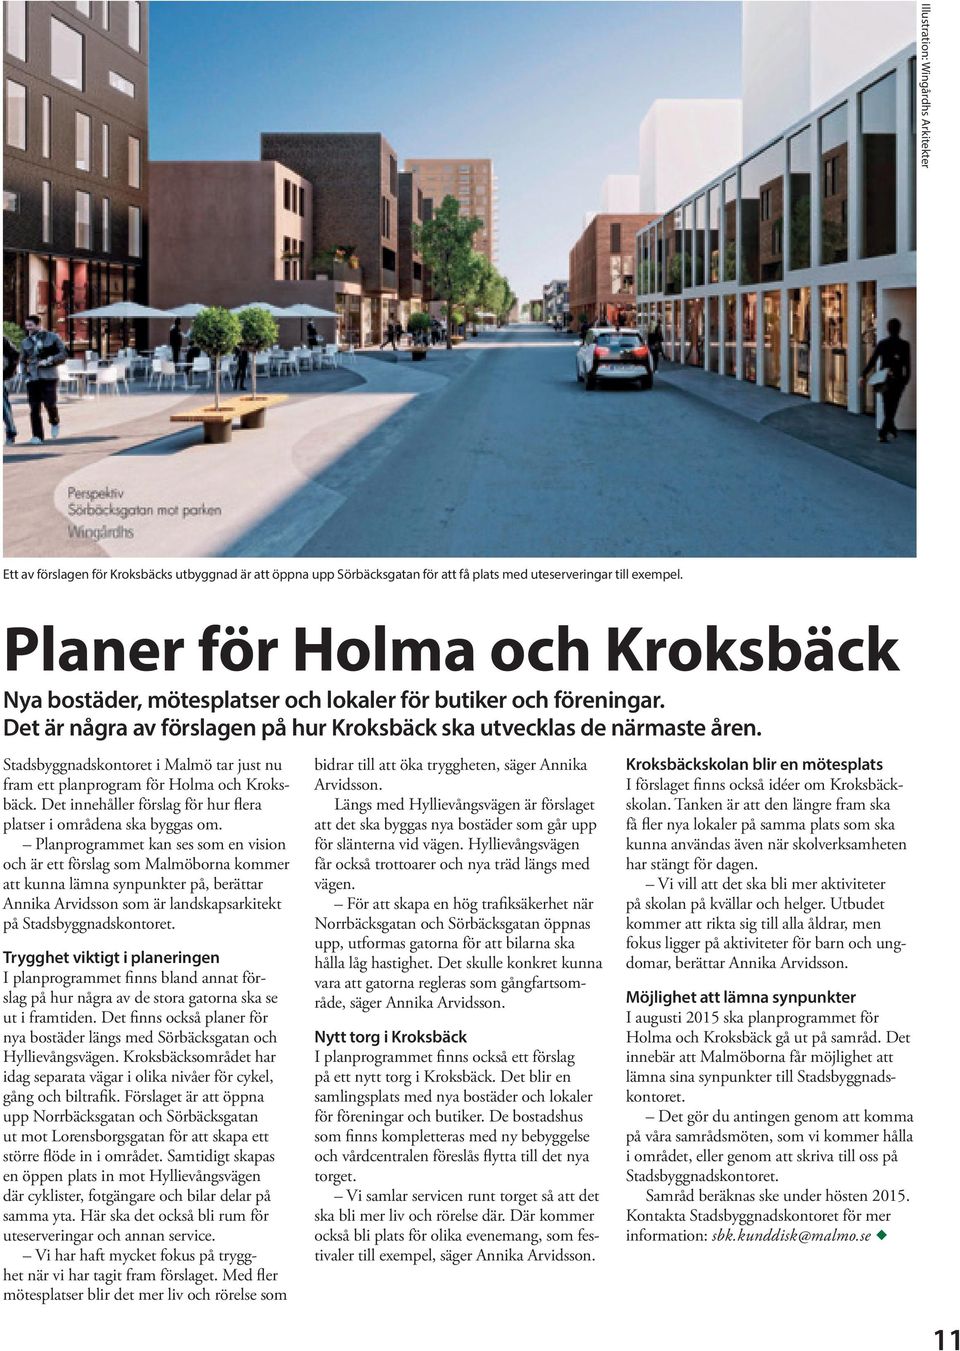 Stadsbyggnadskontoret i Malmö tar just nu fram ett planprogram för Holma och Kroksbäck. Det innehåller förslag för hur flera platser i områdena ska byggas om.